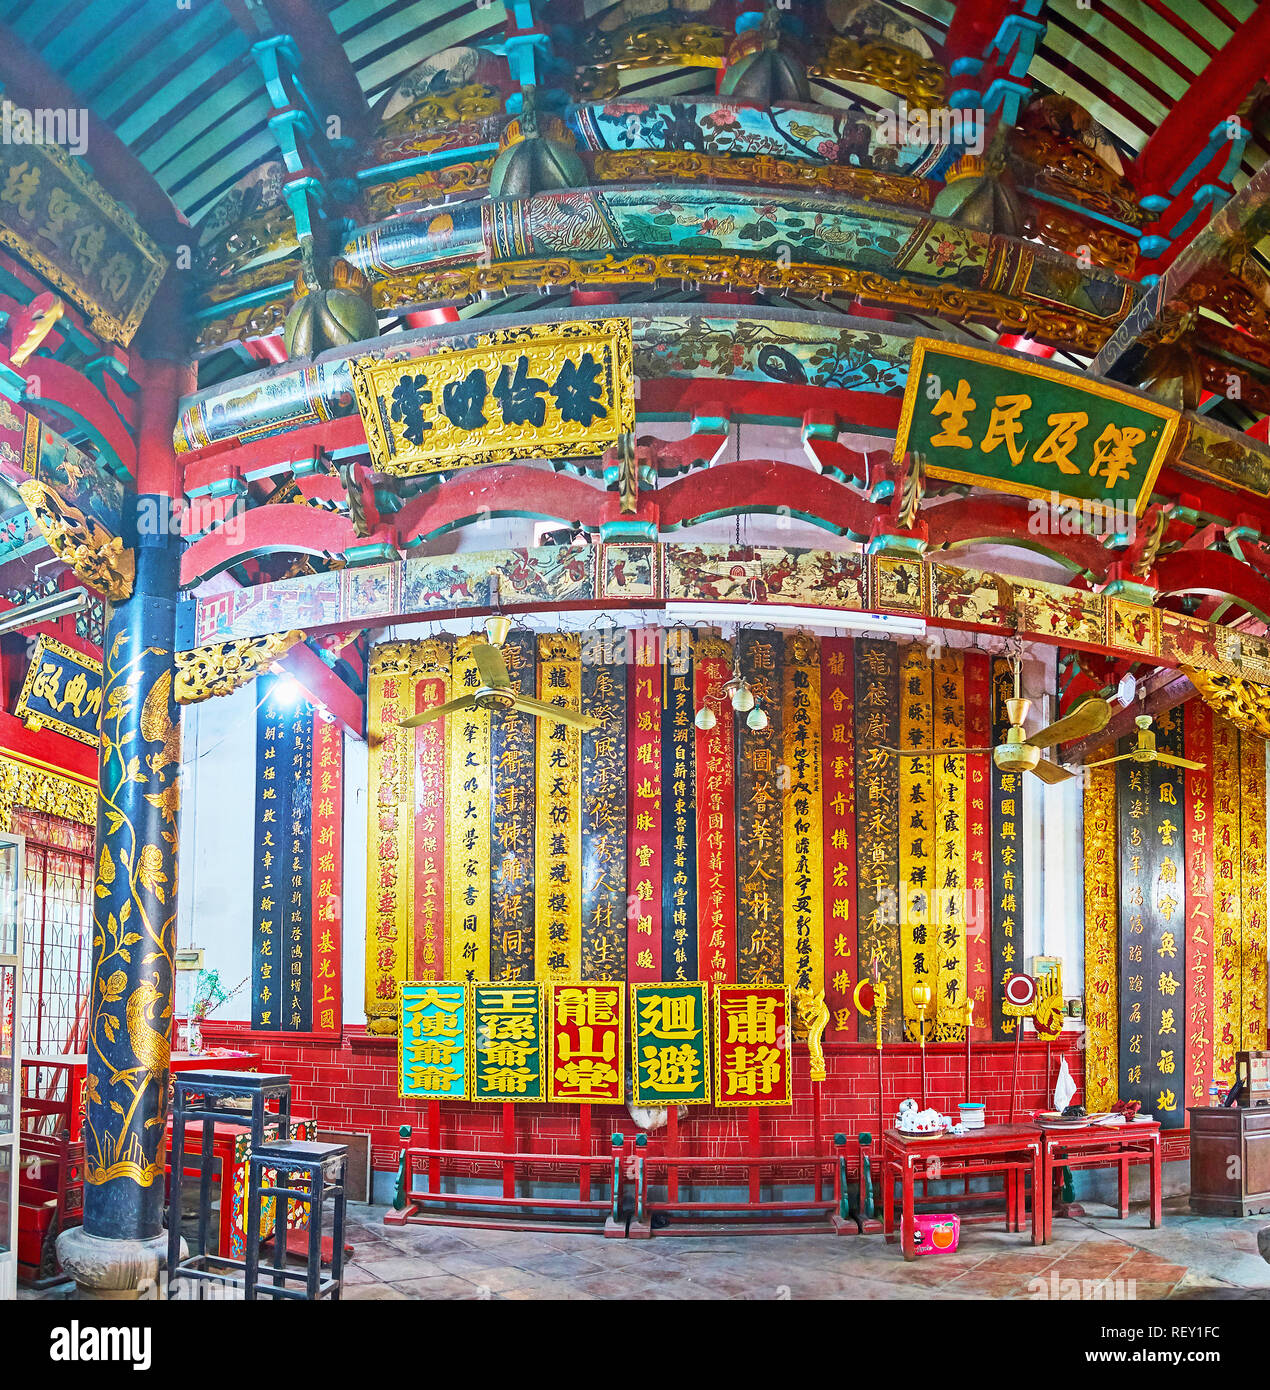 YANGON, MYANMAR - février 17, 2018 : Panorama de la salle de prière du Temple de Long Shan Tang Clan avec des conseils scolaires et calligraphiques ceil en bois sculpté Banque D'Images